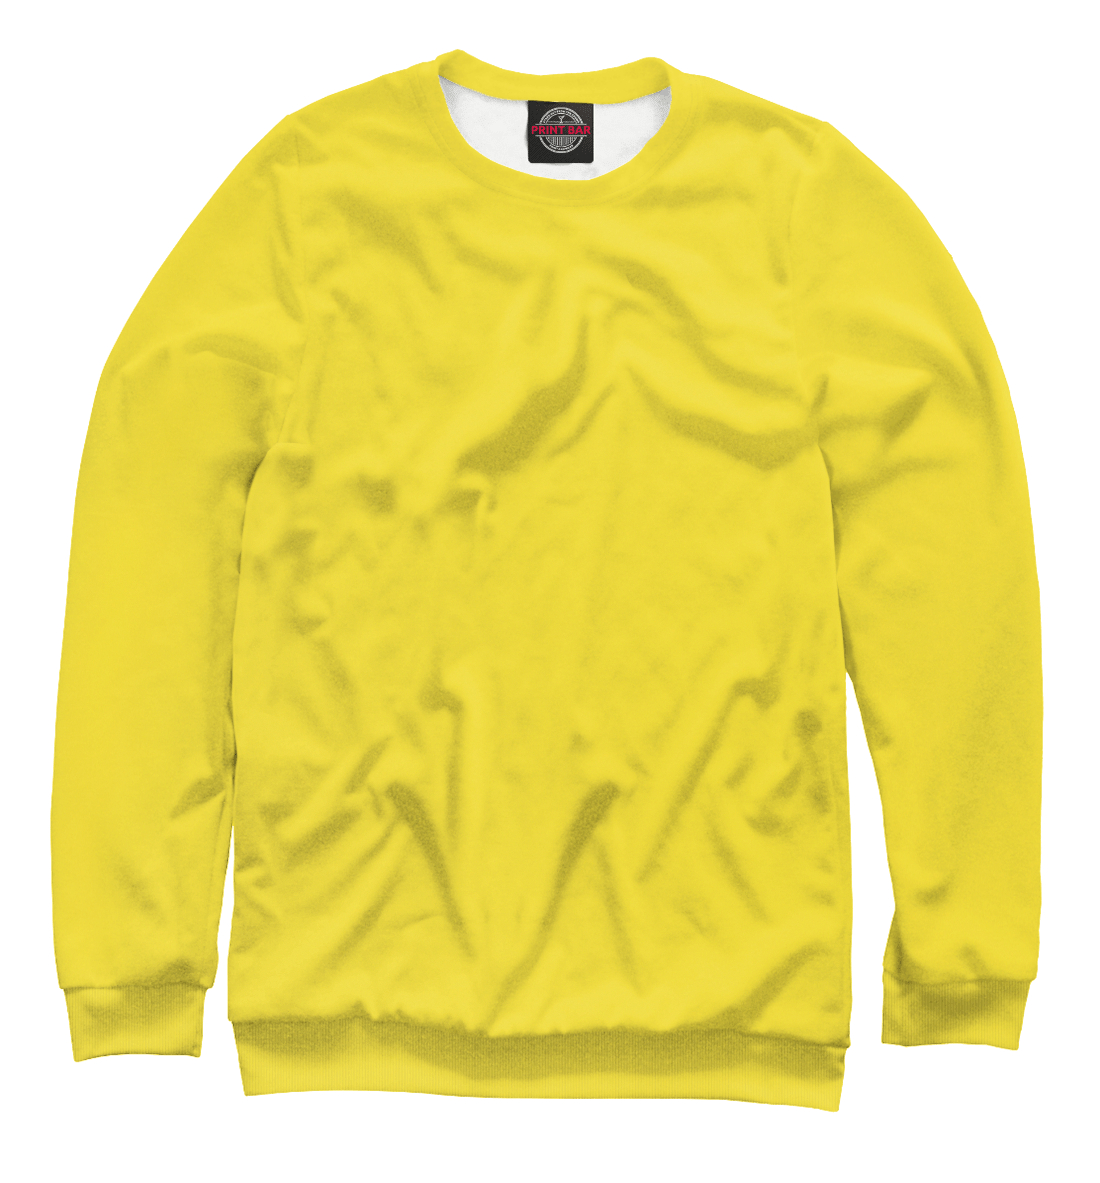 Детский Свитшот Цвет Рапсово-желтый для мальчиков, артикул CLR-692519-swi-2mp